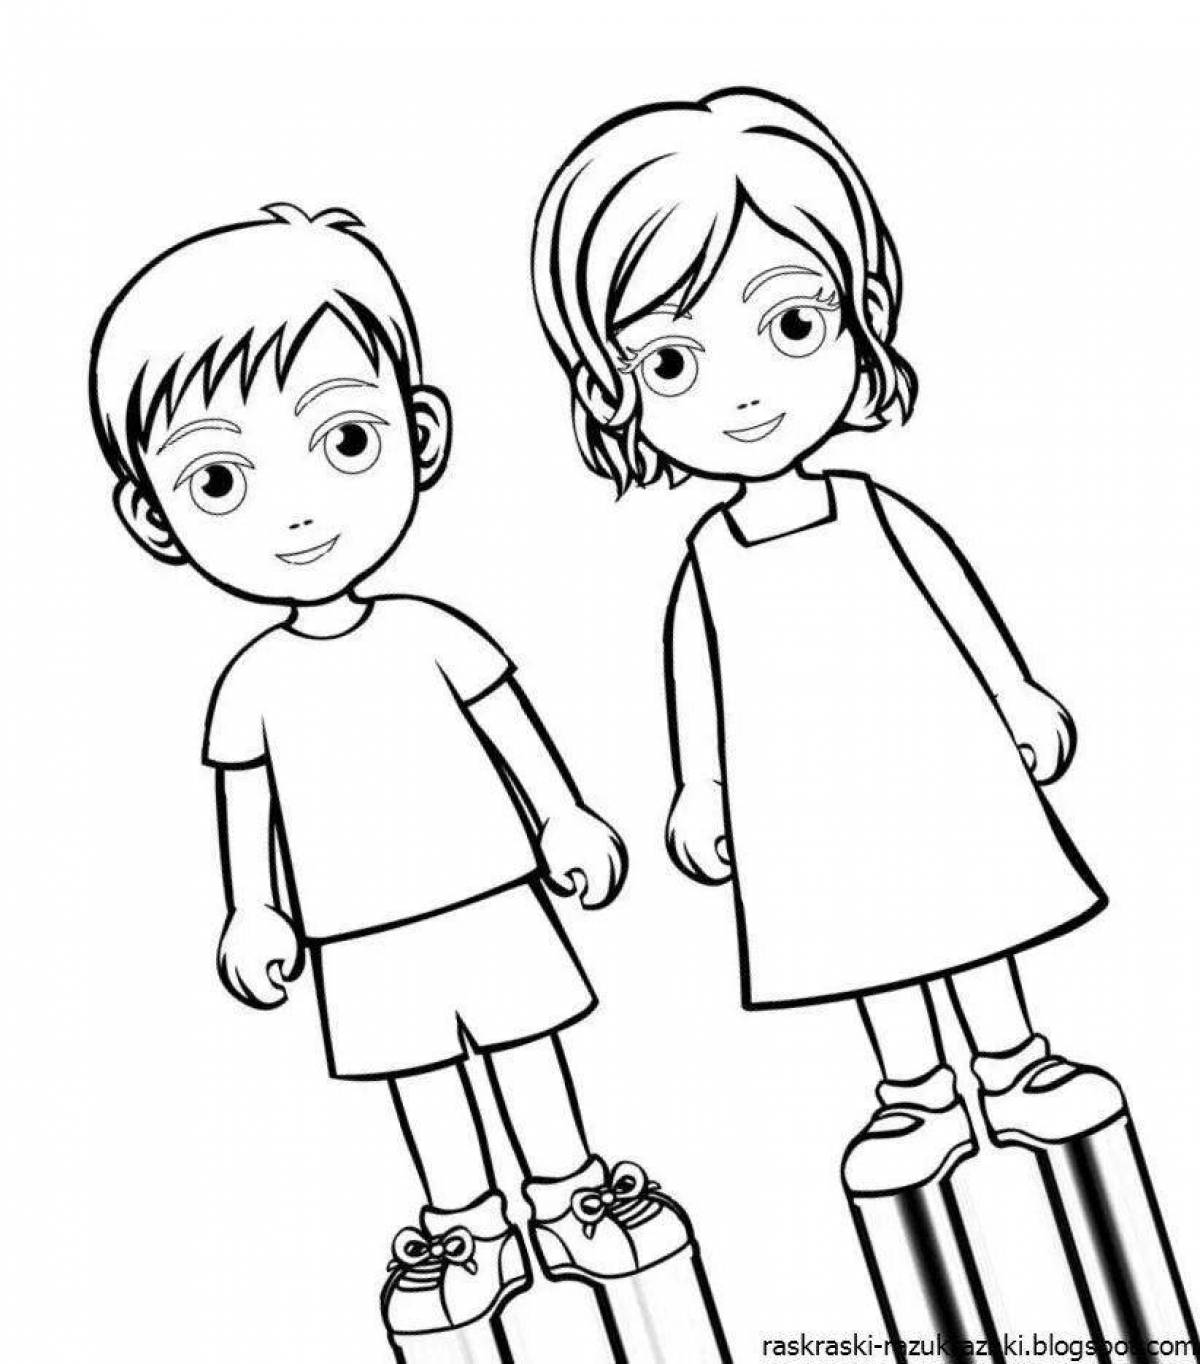 Мальчик и девочка раскраска для детей